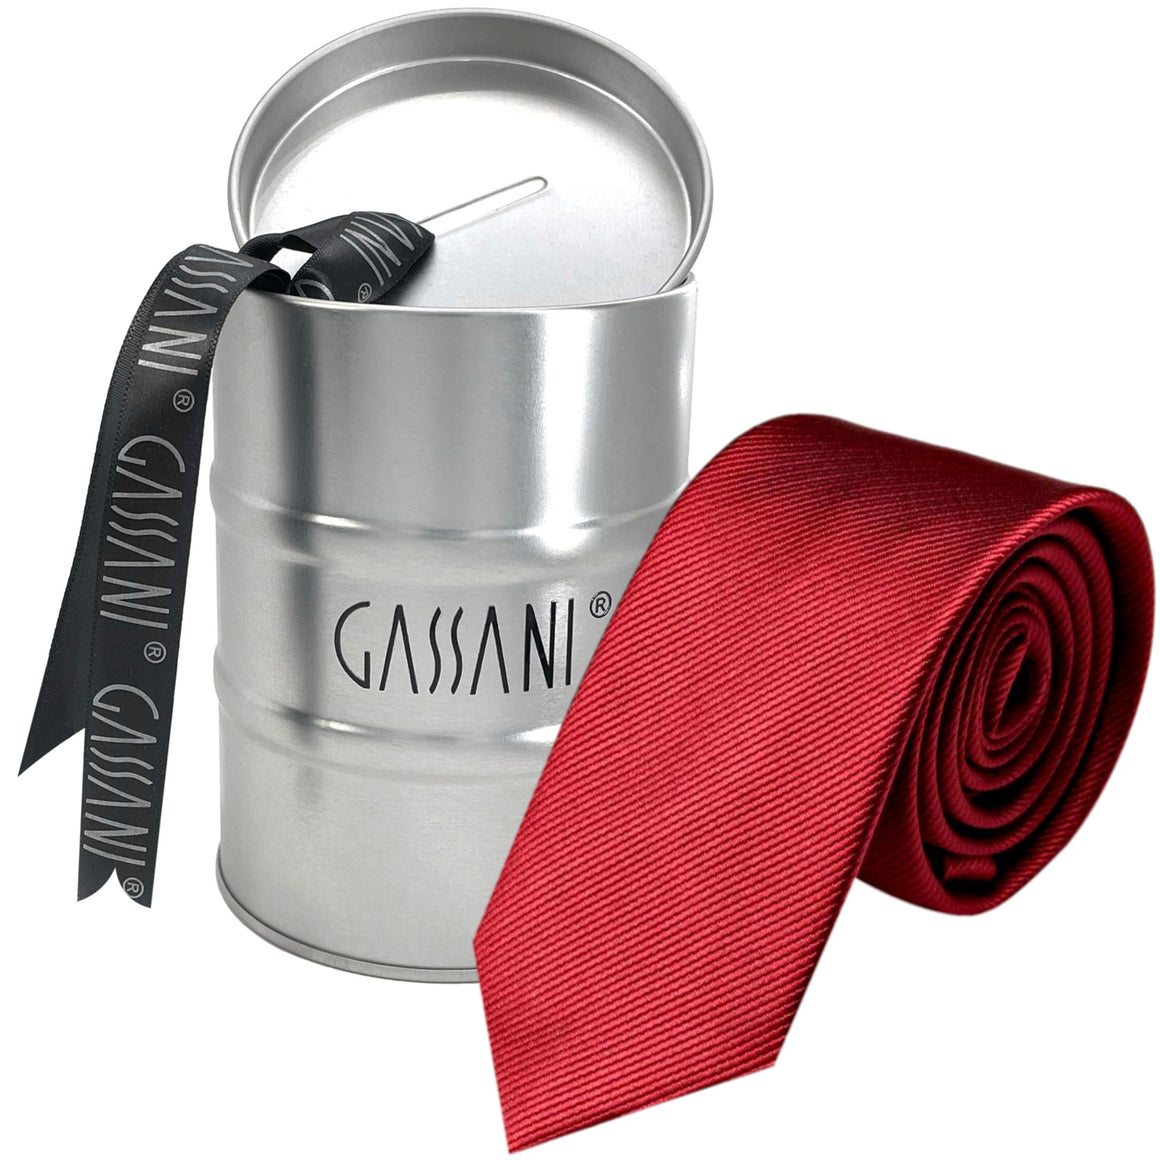 GASSANI 8 cm úzká bordó-červeně pruhovaná hladká pánská kravata, kravatový pořadač v dárkové krabičce plechová kasička